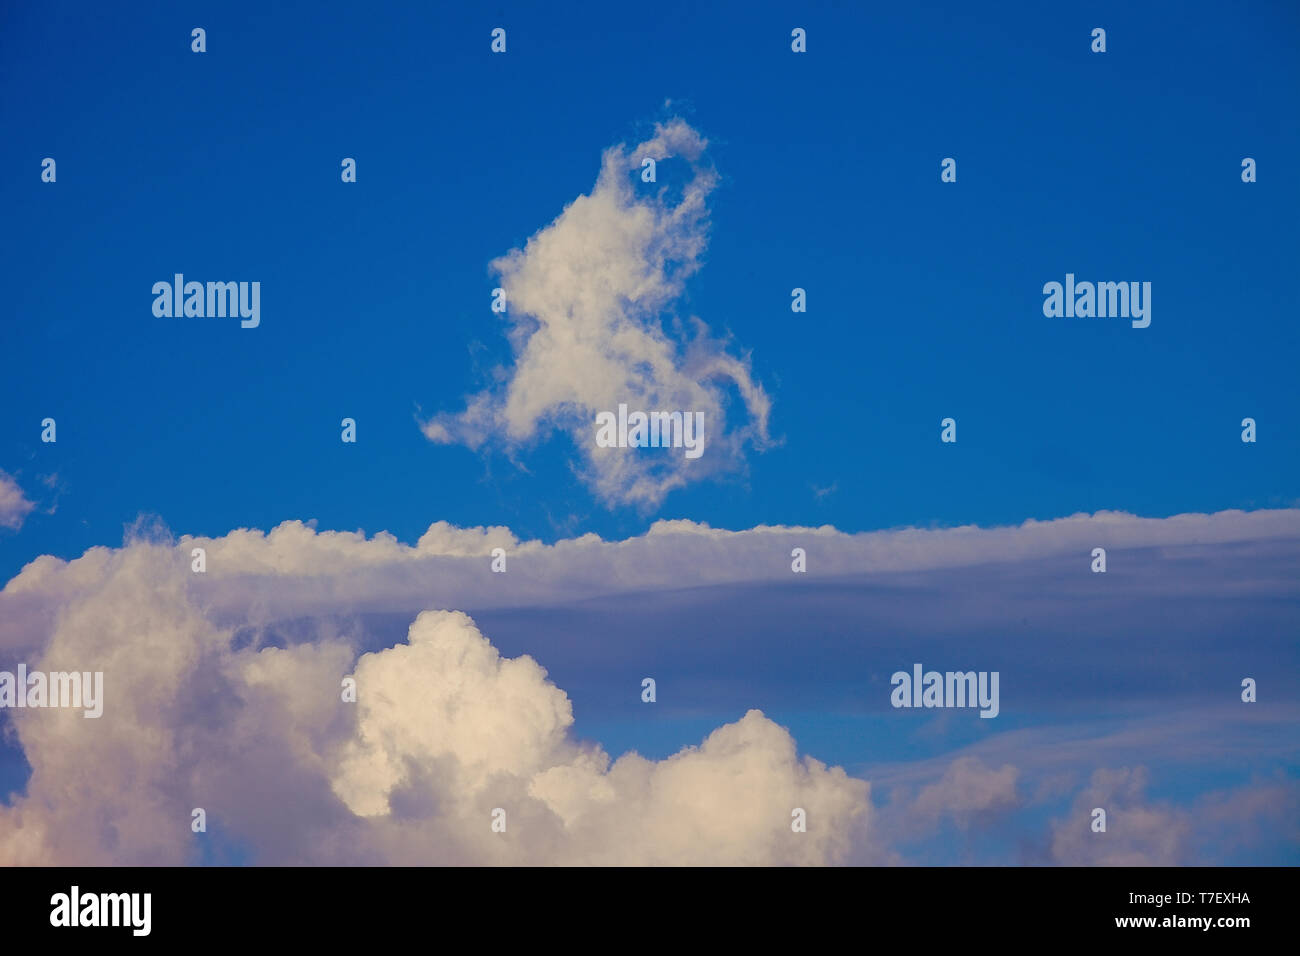 Puffy nubi in un cielo blu. Immagine di stock Foto Stock